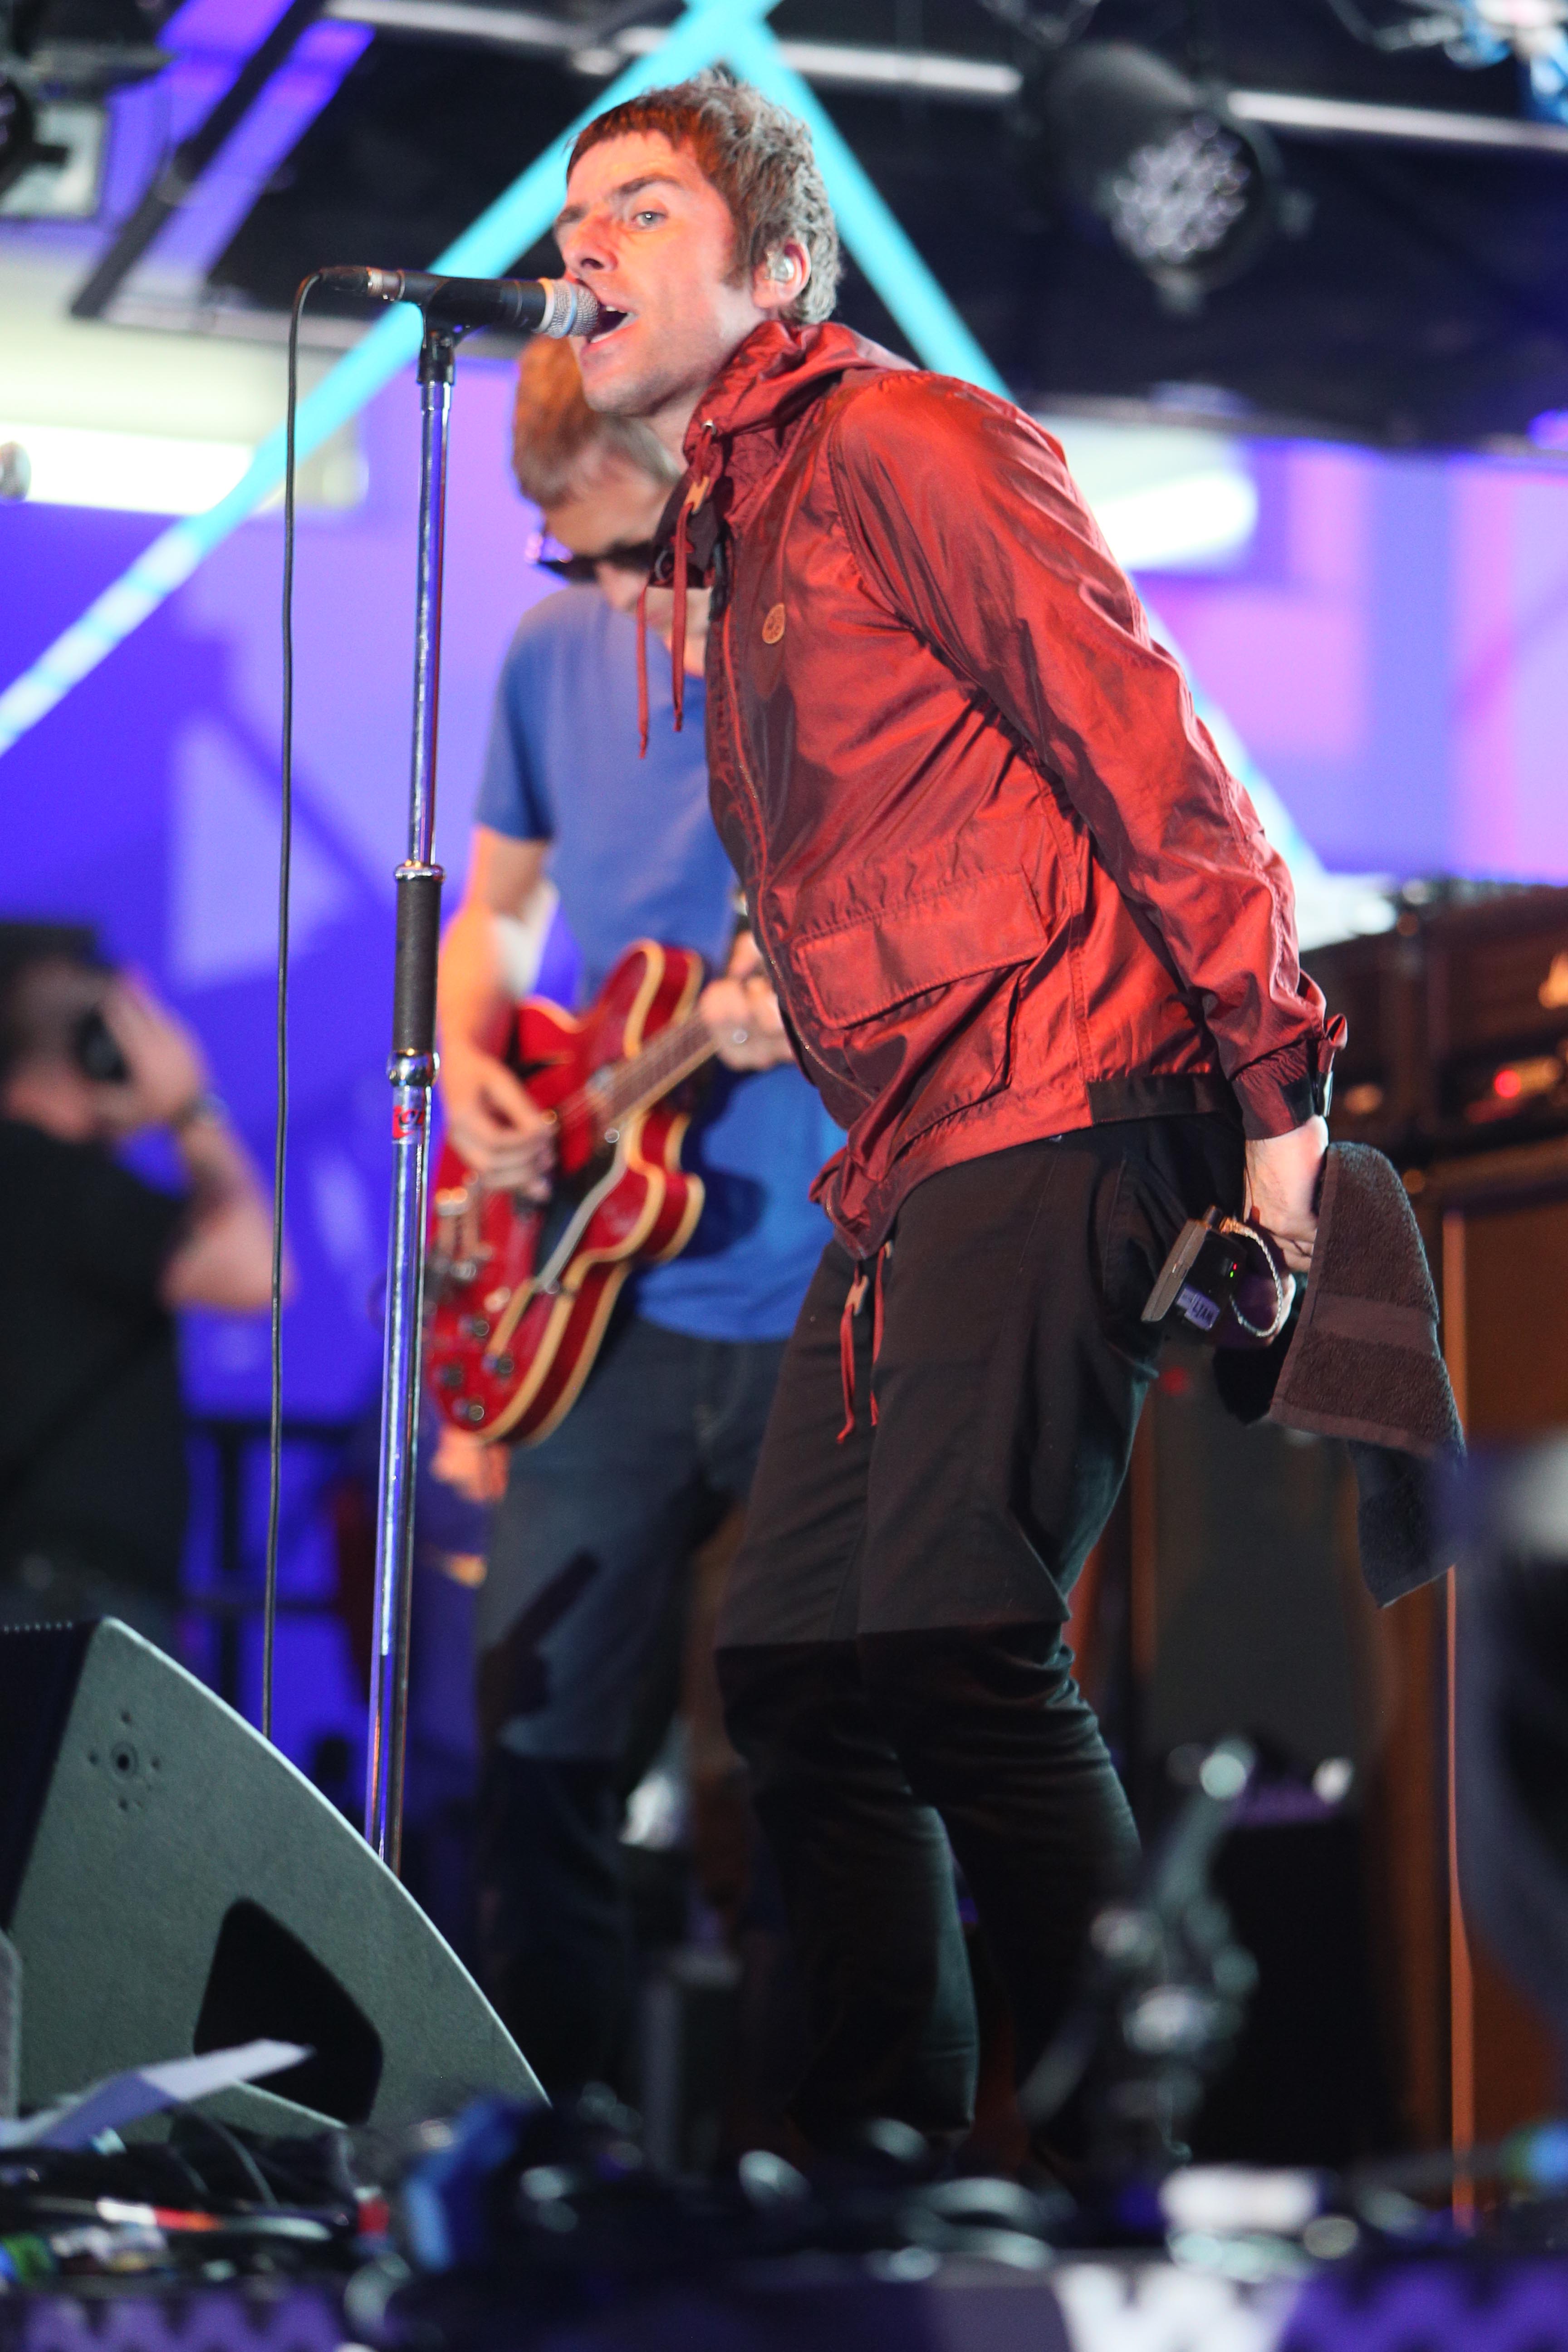 Liam Gallagher ikut tampil dalam gelaran konser 'One Love Manchester' baru-baru ini © Splashnews